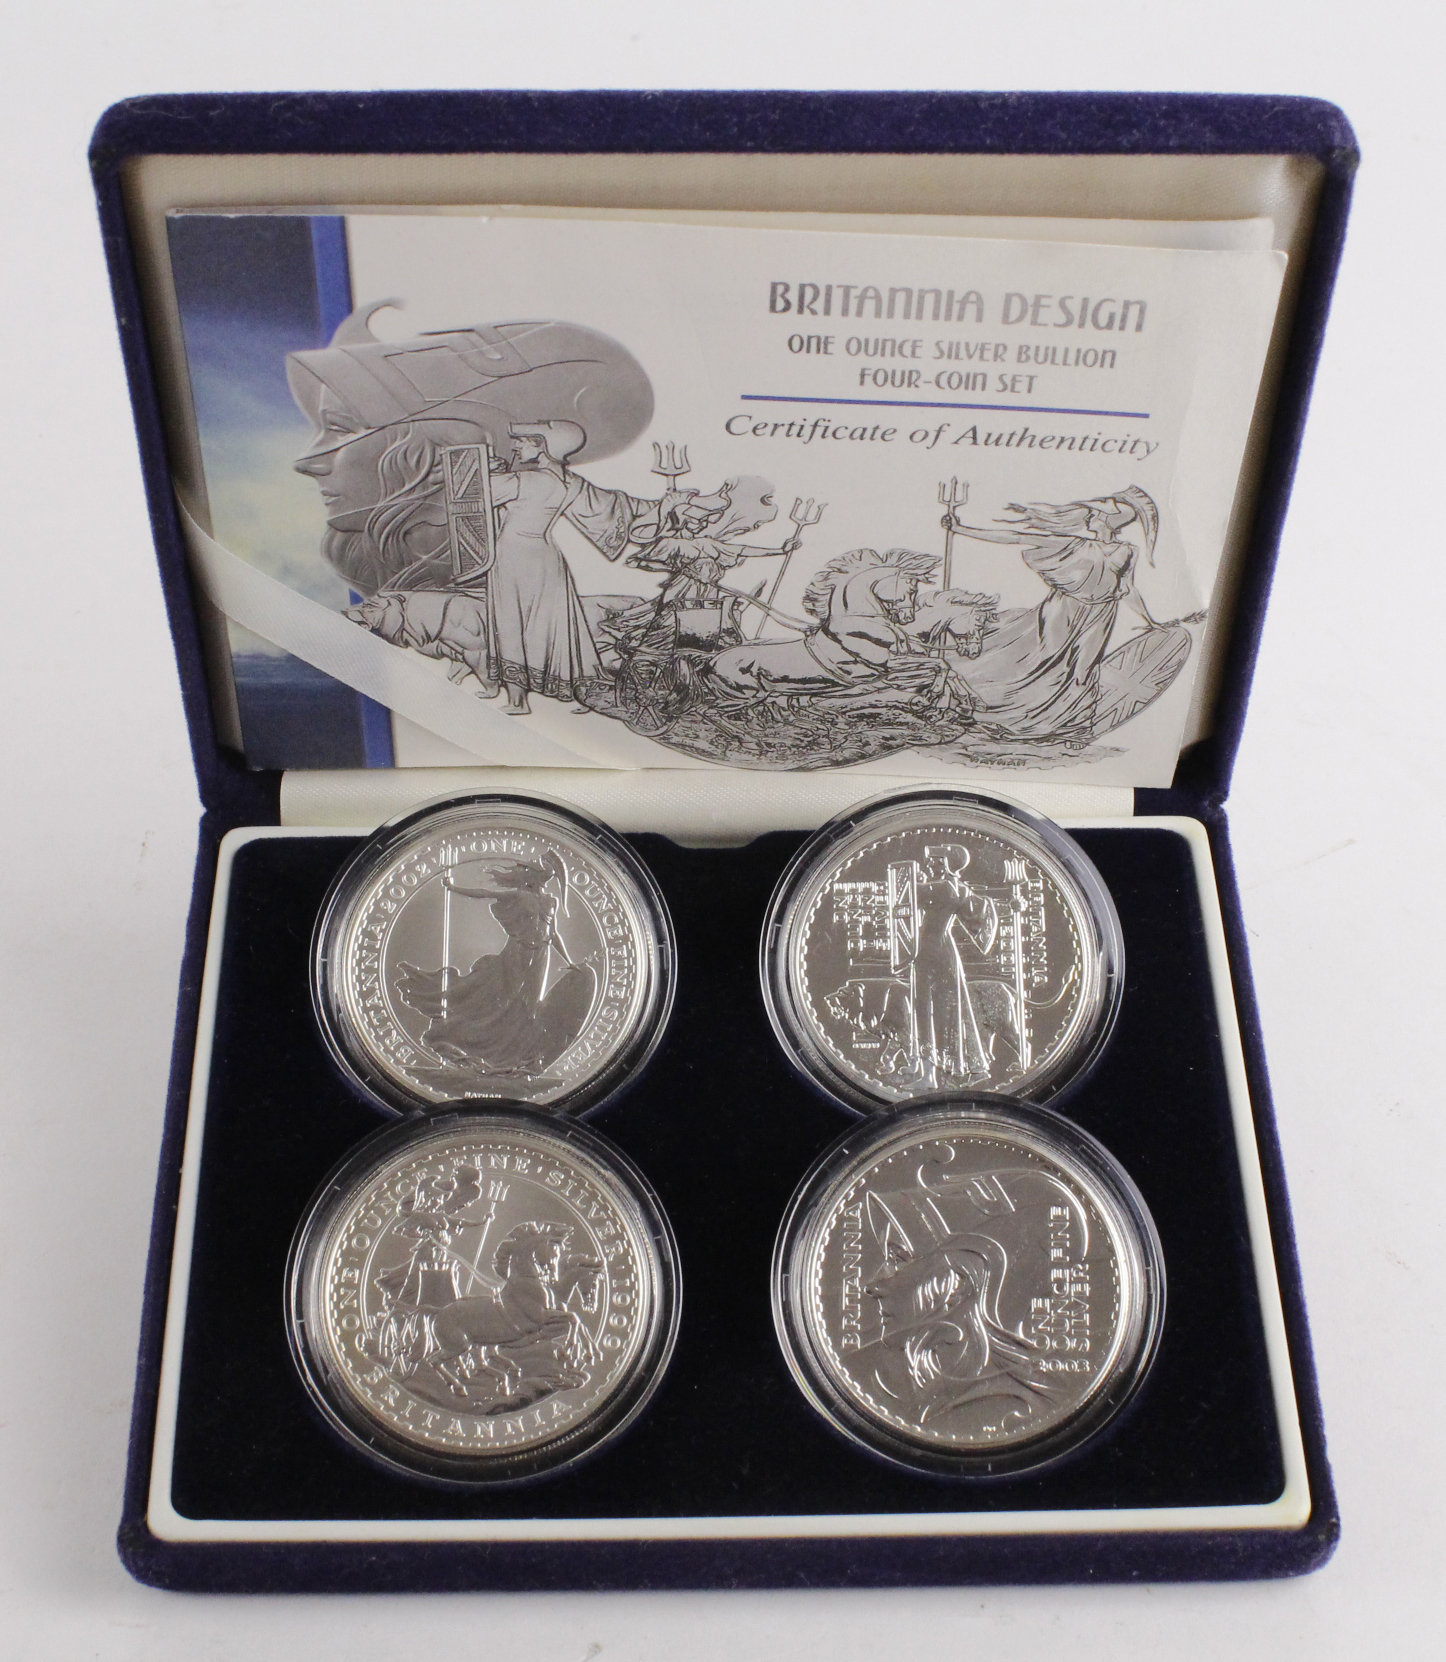 Royal Mint: Britannia Design, One Ounce Silver Bullion Four-Coin Set: 1999, 2001, 2002 and 2003